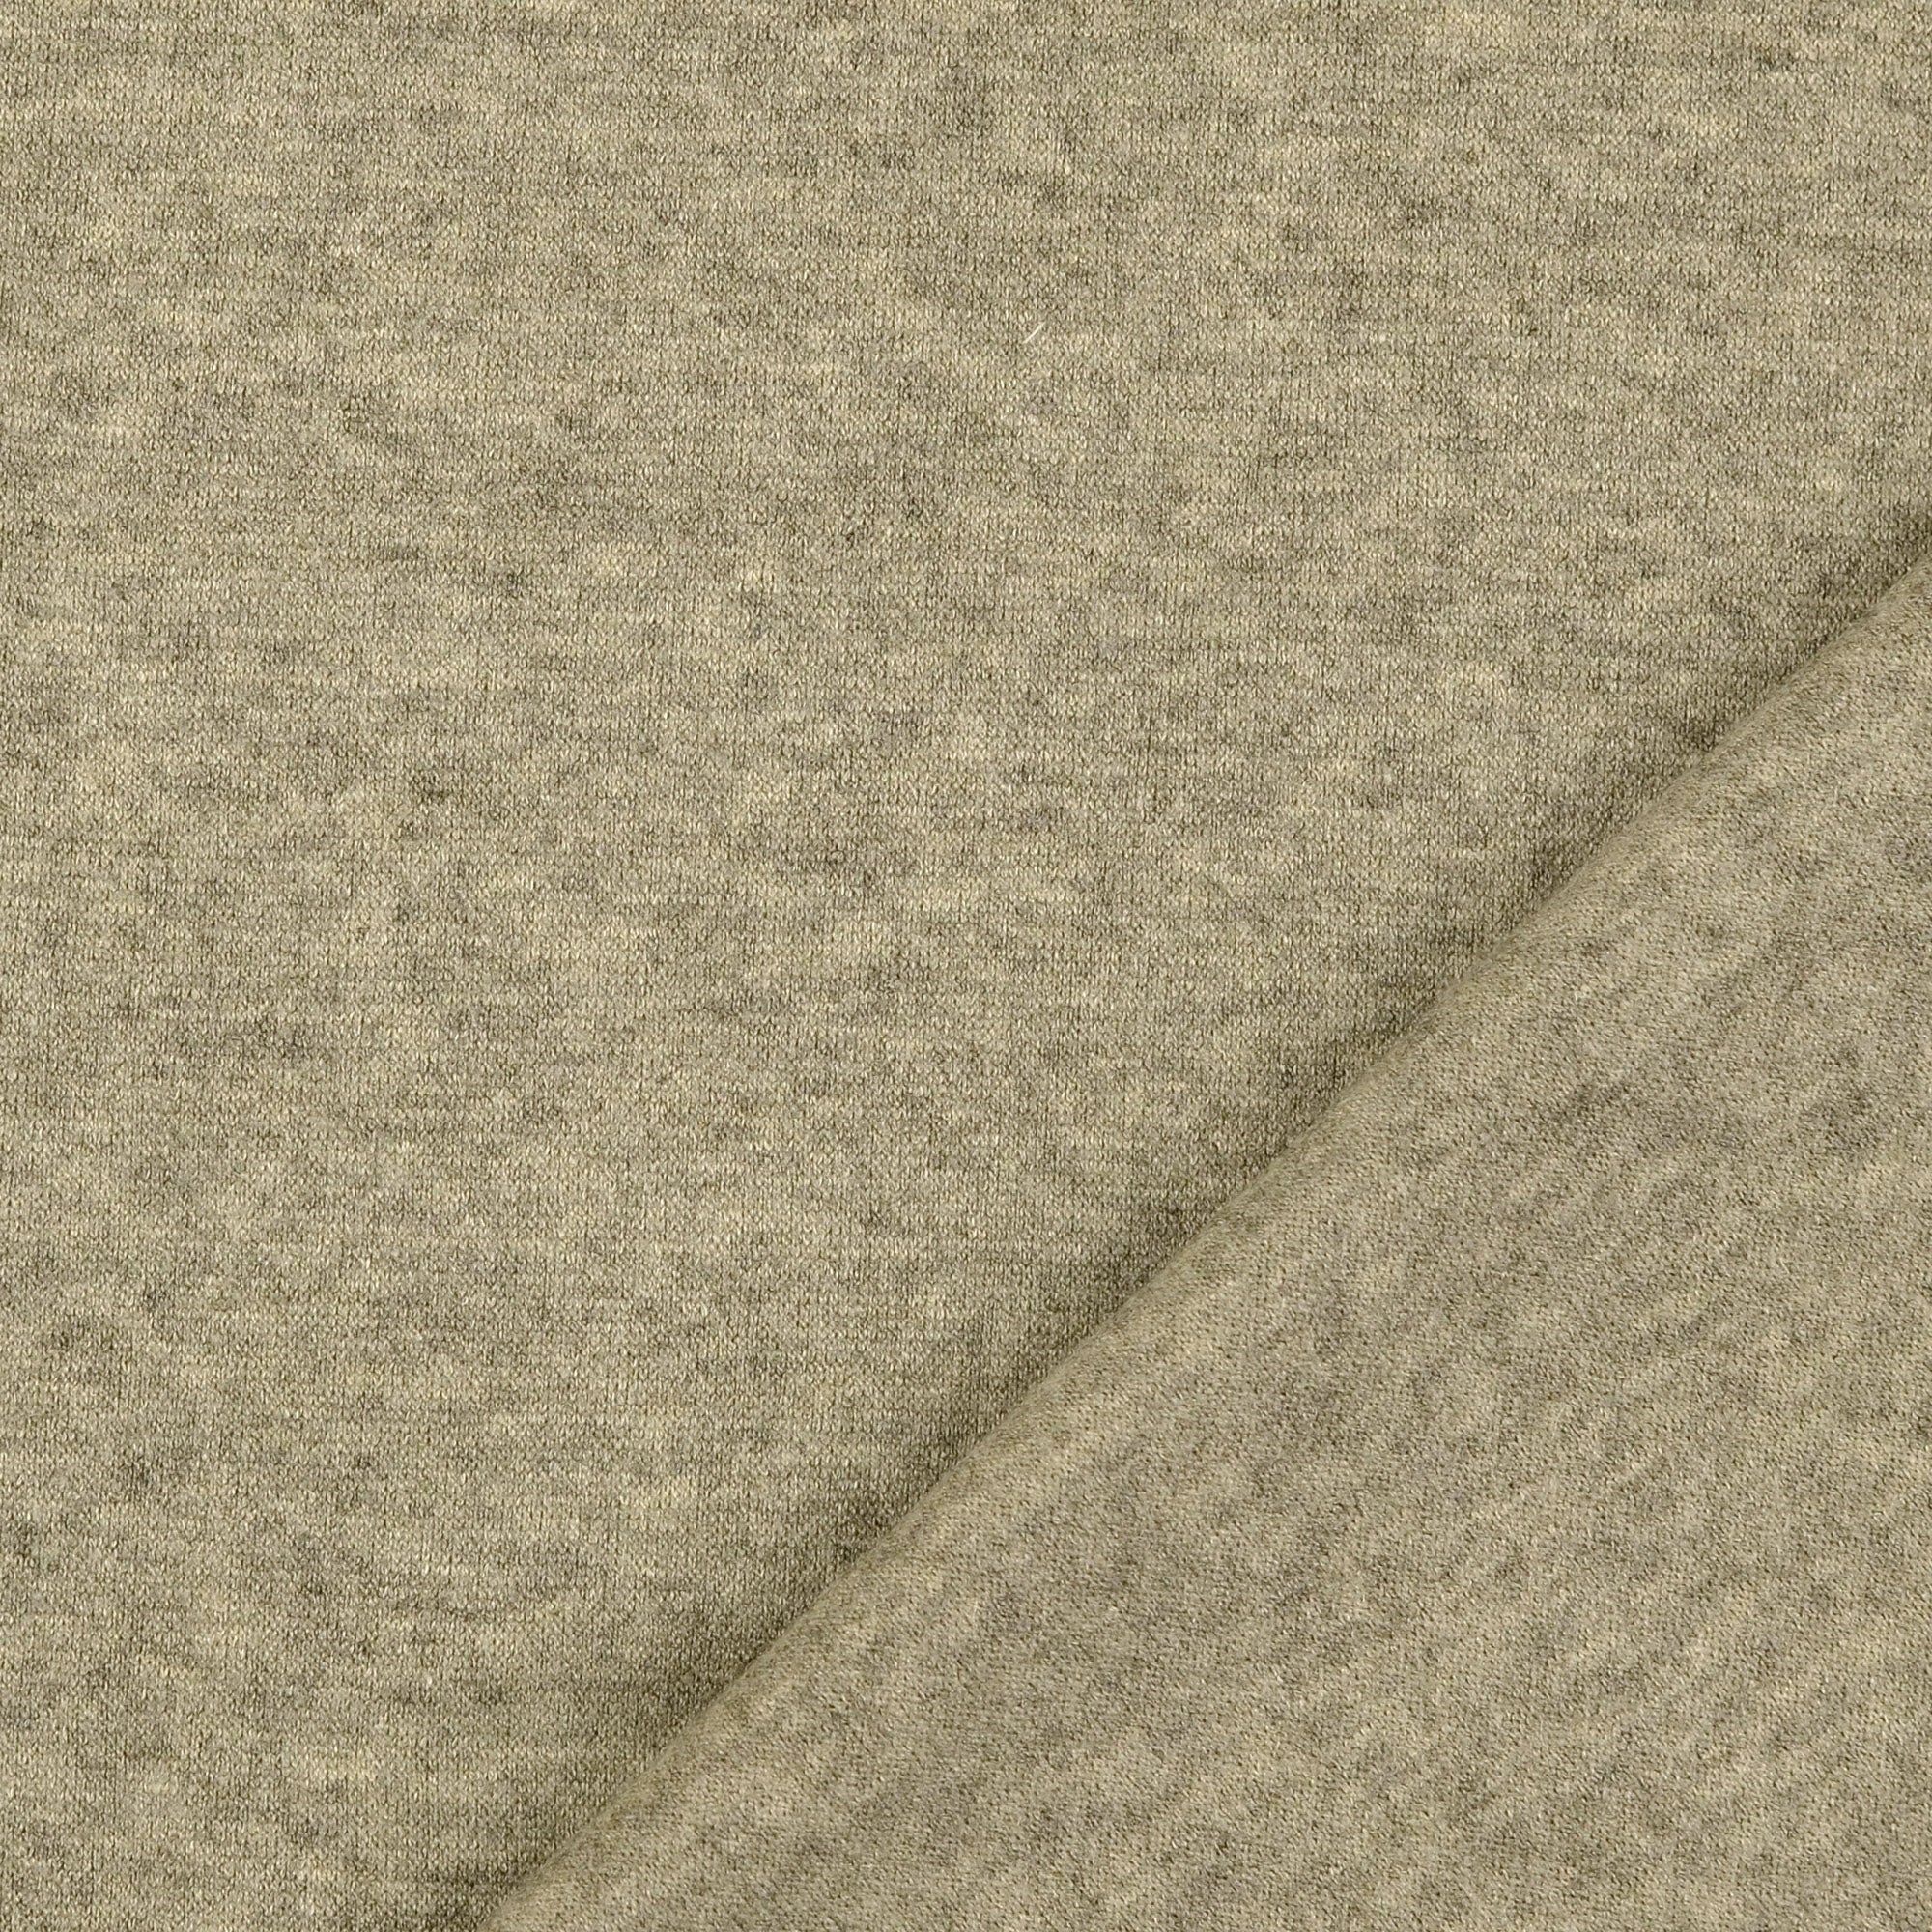 REMNANT 0.68 Metre - Snug Viscose Blend Sweater Knit in Olive Melange